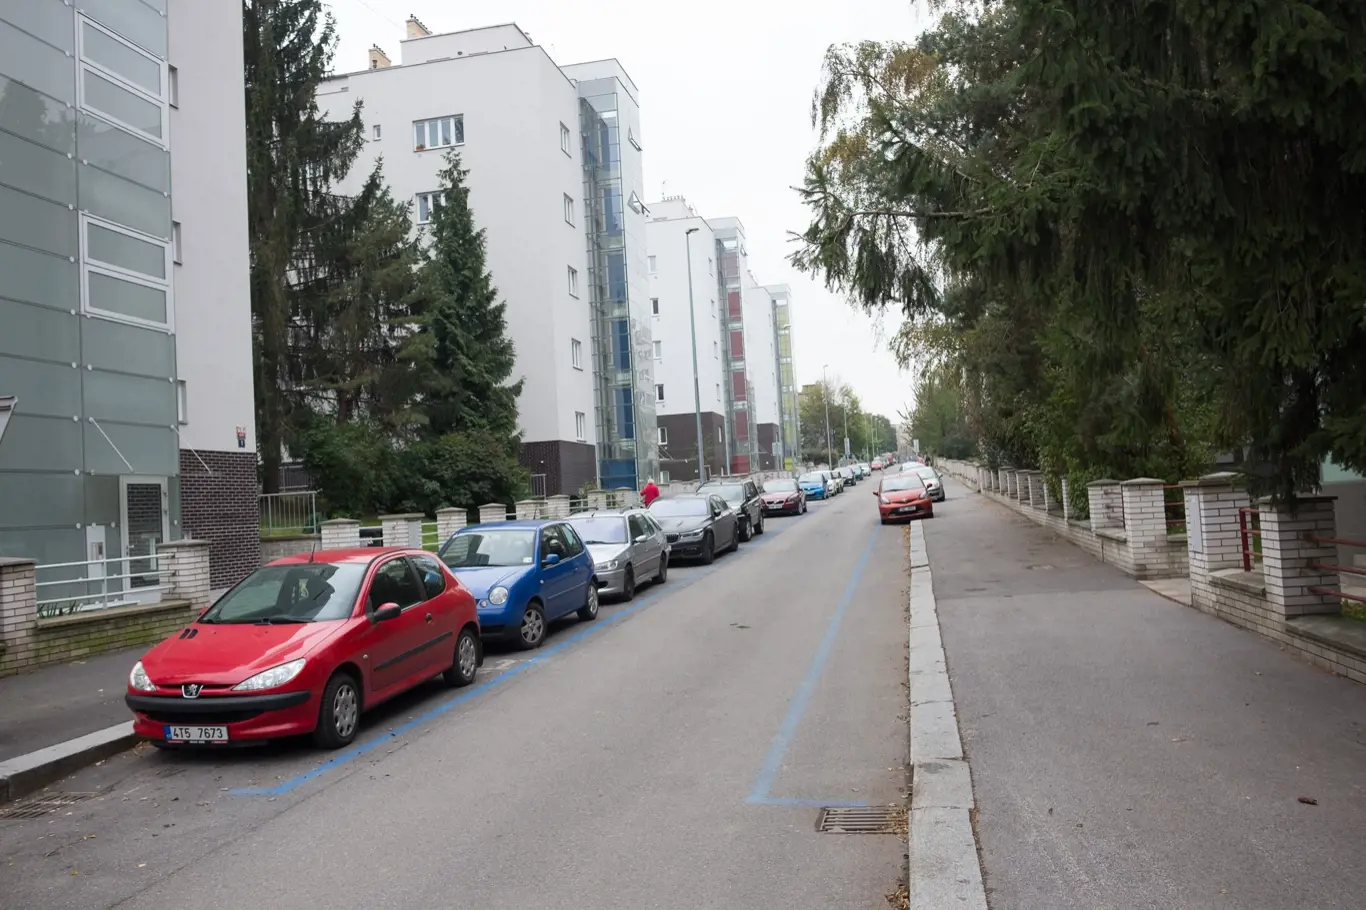 Až budete přemýšlet, proč je v pražských ulicích namalováno tolik modrých a bílých čar, pamatujte i na to, že firma, která vše kontroluje, je odměňována podle počtu parkovacích míst v regulovaných zonách. 